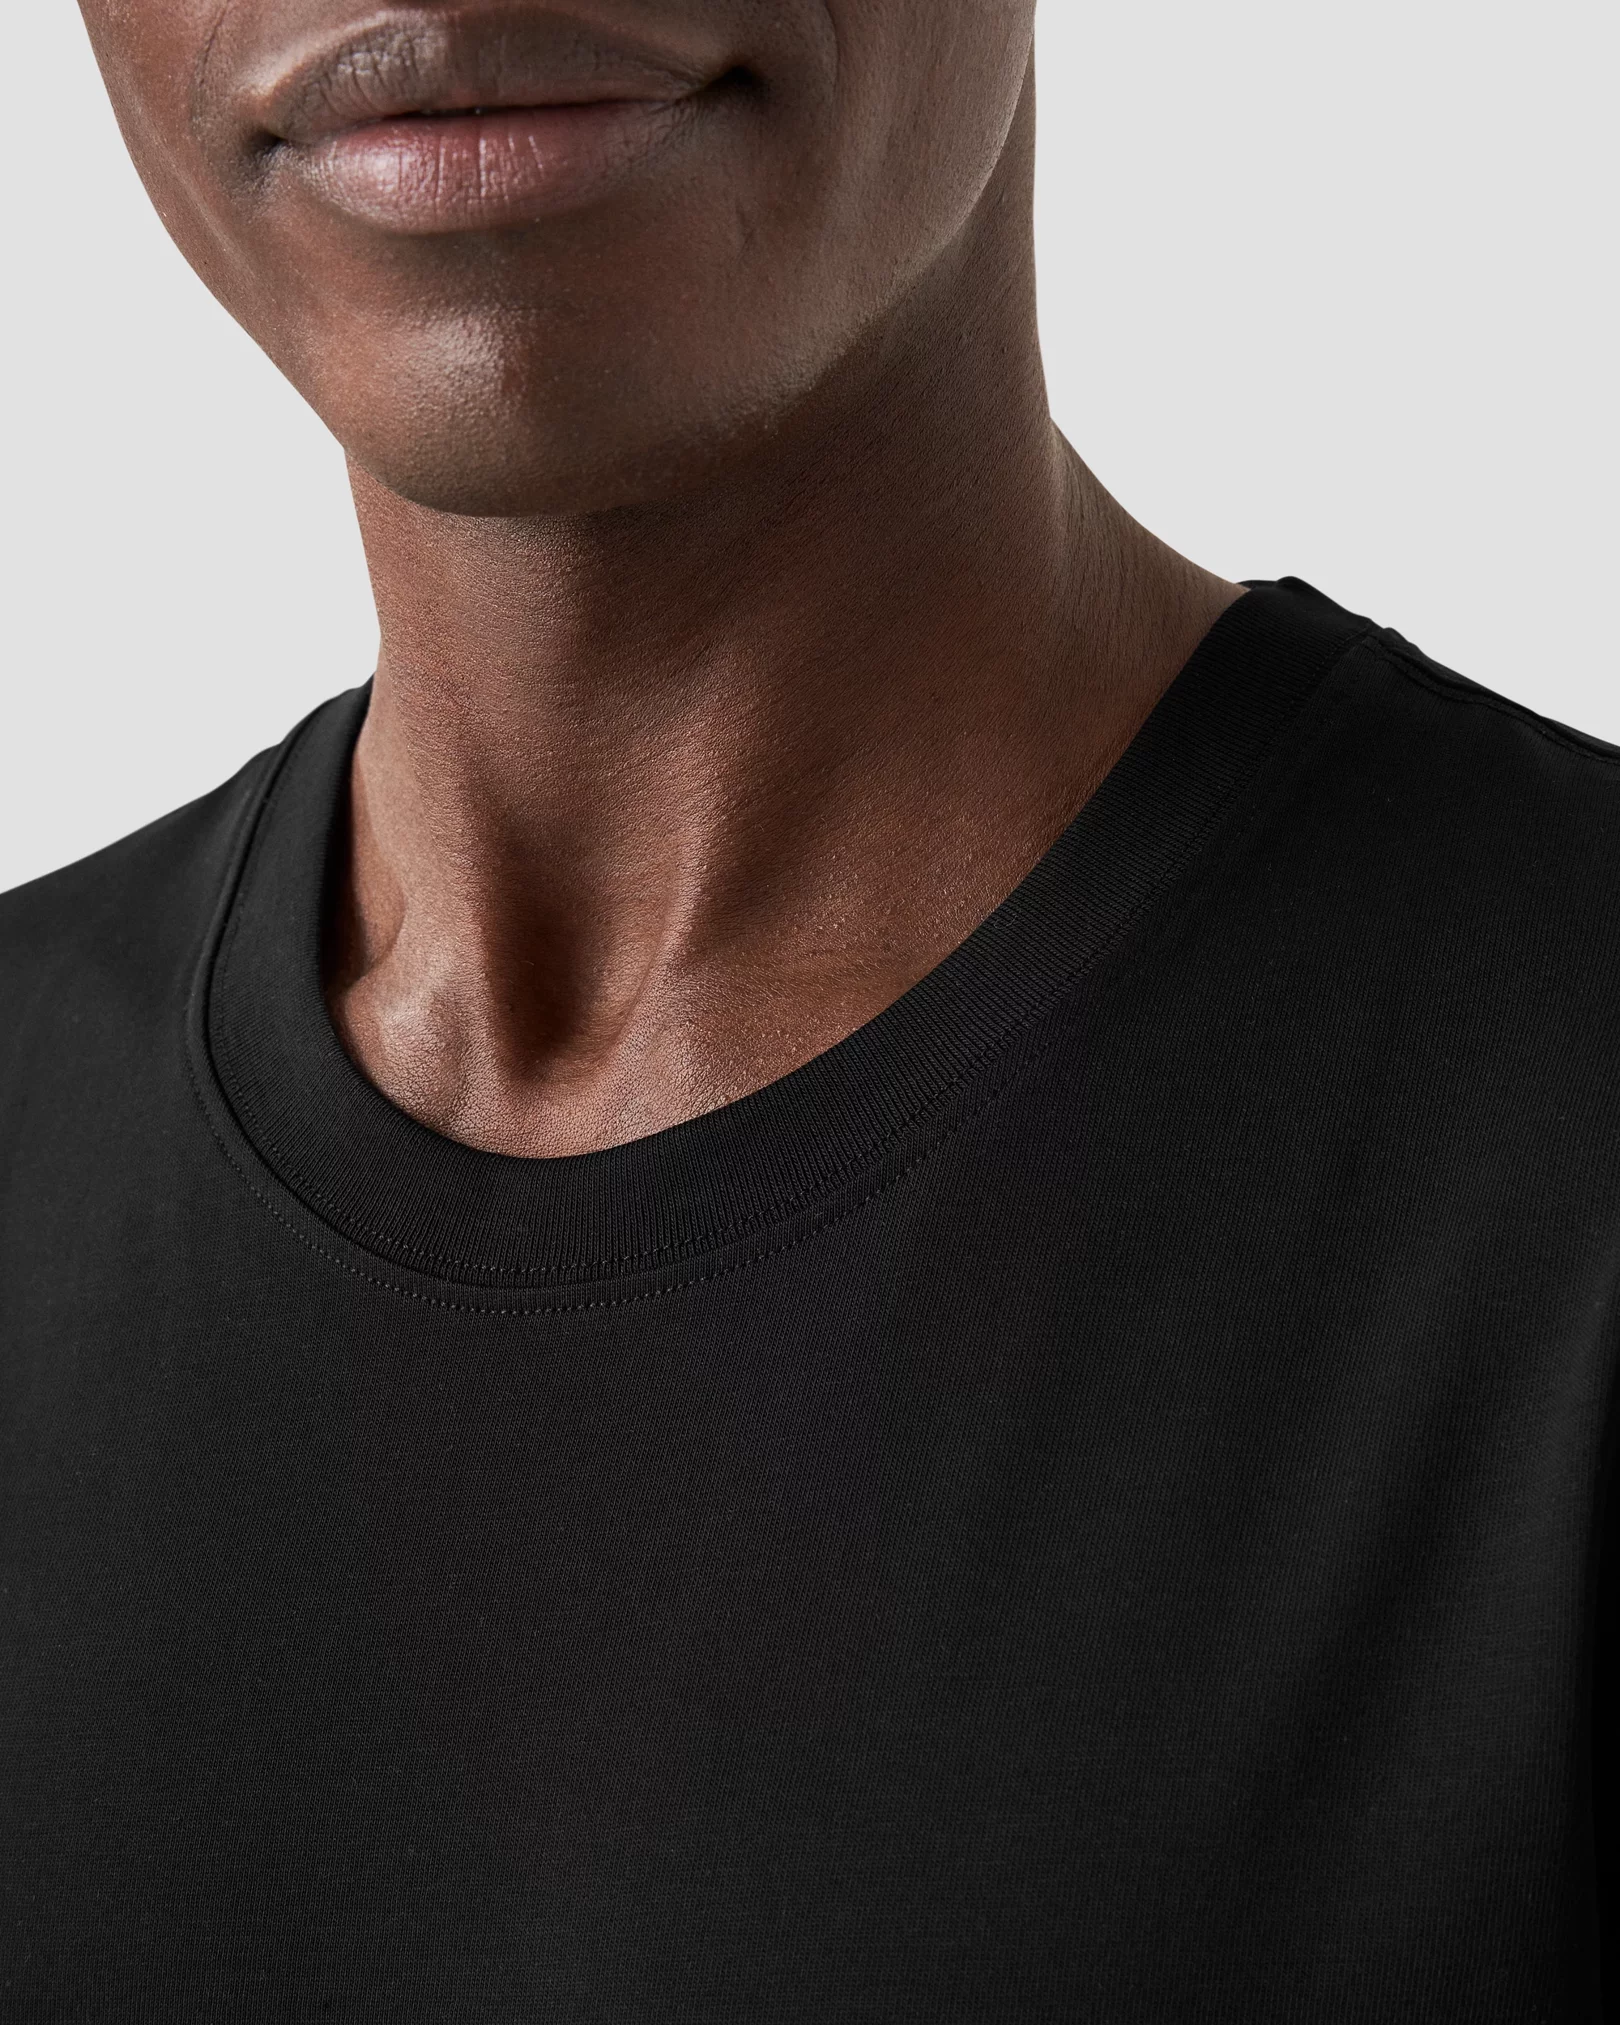 Eton - Chemise noire en T-shirt de coton Supima